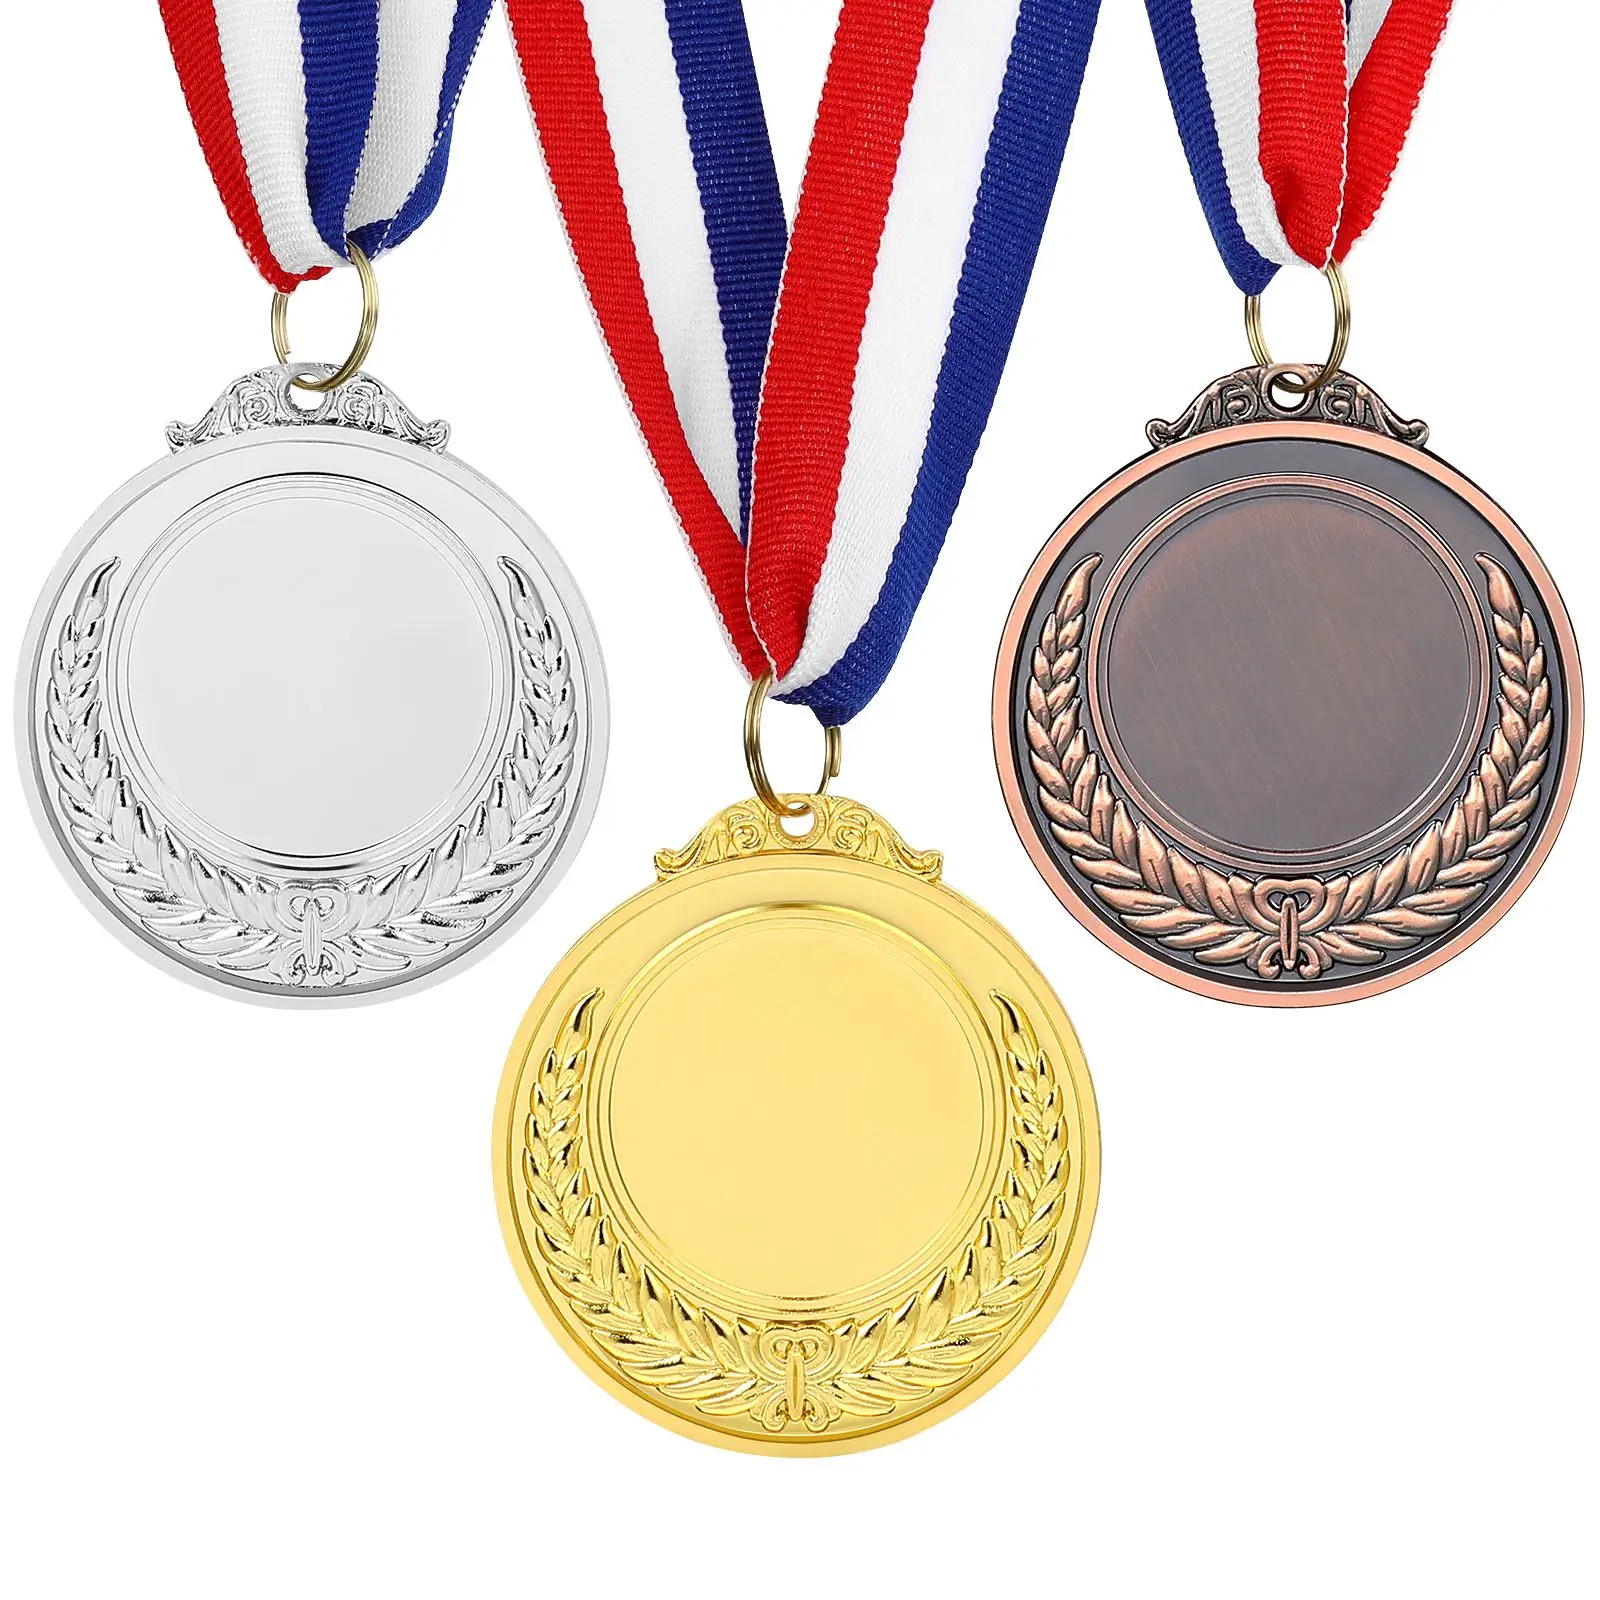 medallas de oro plata y bronce para deportes competiciones o regalos de fiesta Juego de 3 medallas para premios